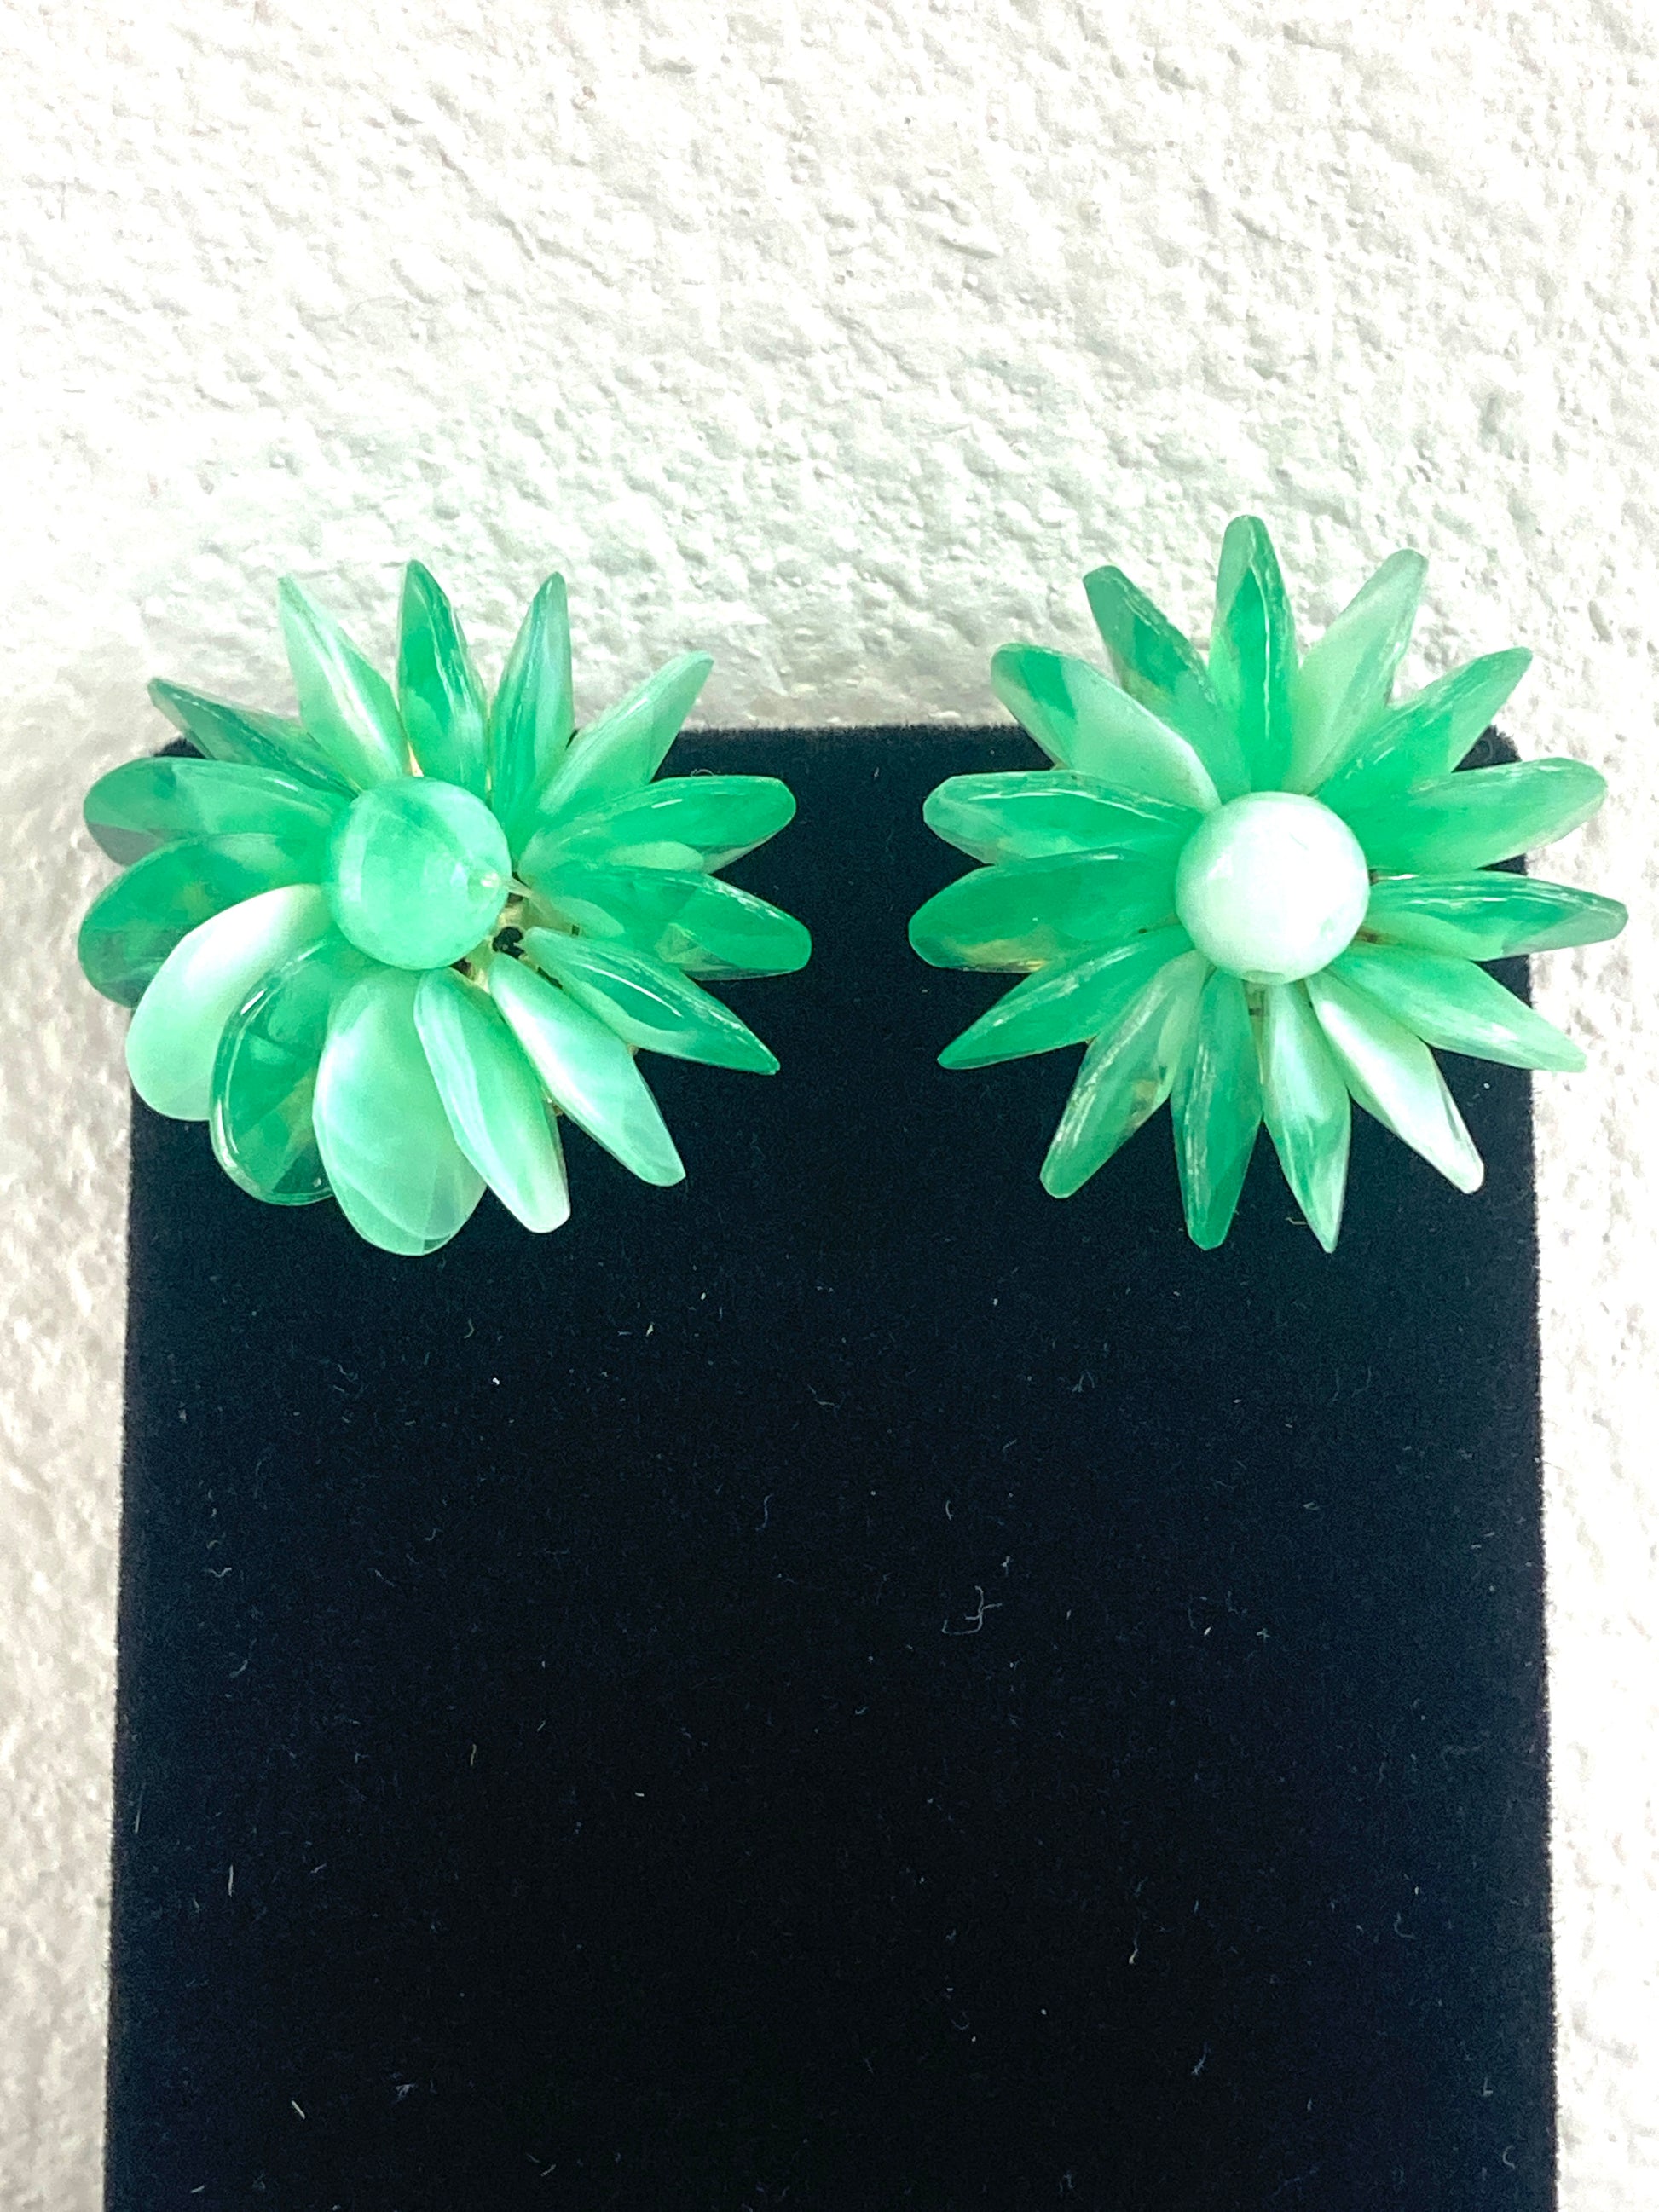 Green Beaded Flower Earrings Hong Kong Clip-on Style